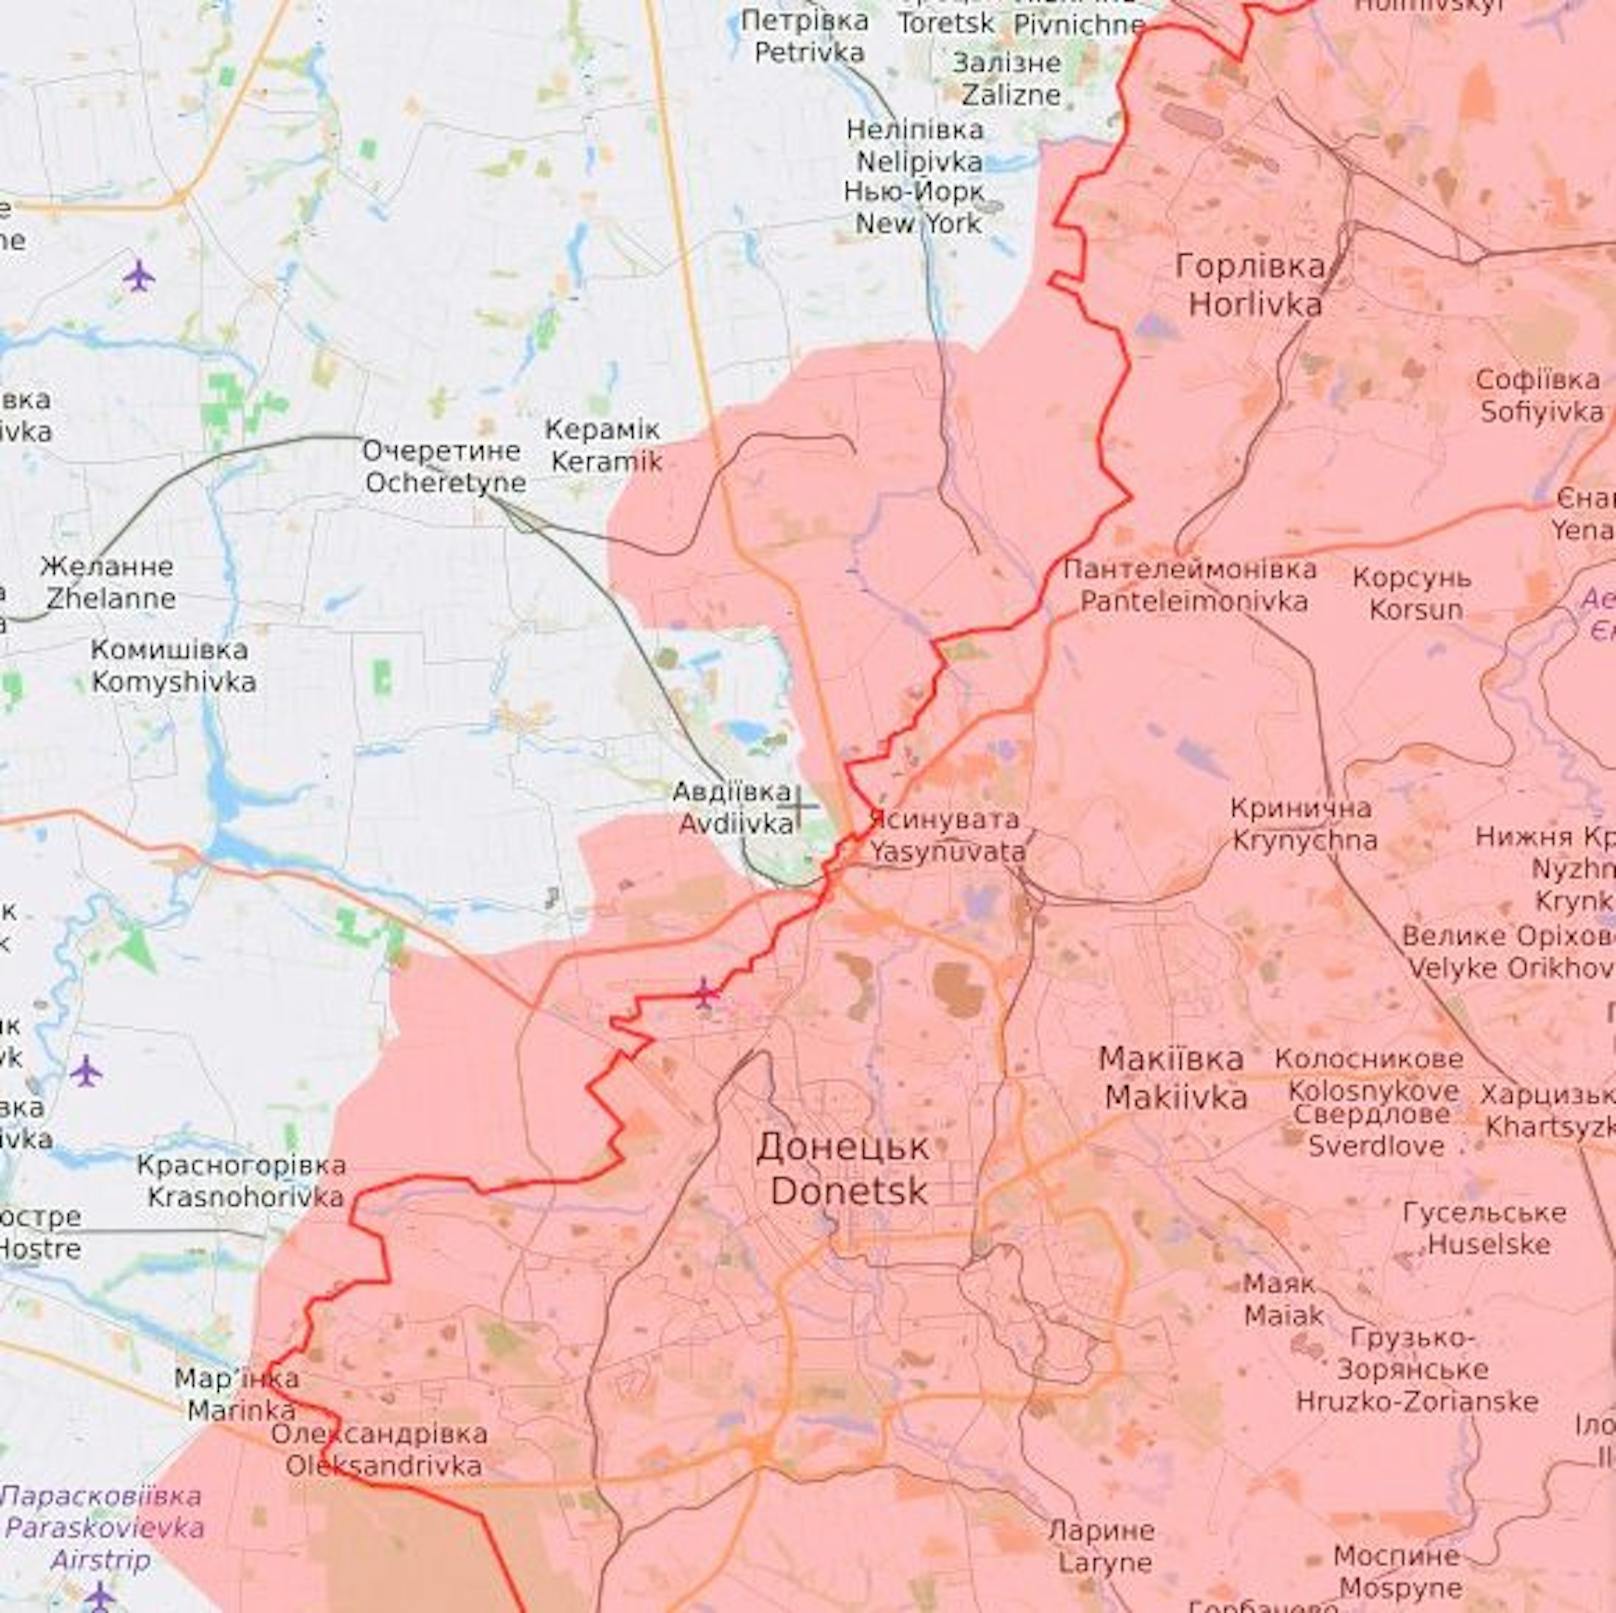 Awdijiwka (eng. Avdiivka; im Zentrum) liegt direkt an der Front, ist ein Vorort der Separatisten-Hauptstadt Donezk (Donetsk). In Rot eingefärbt die russisch besetzen Gebiete.